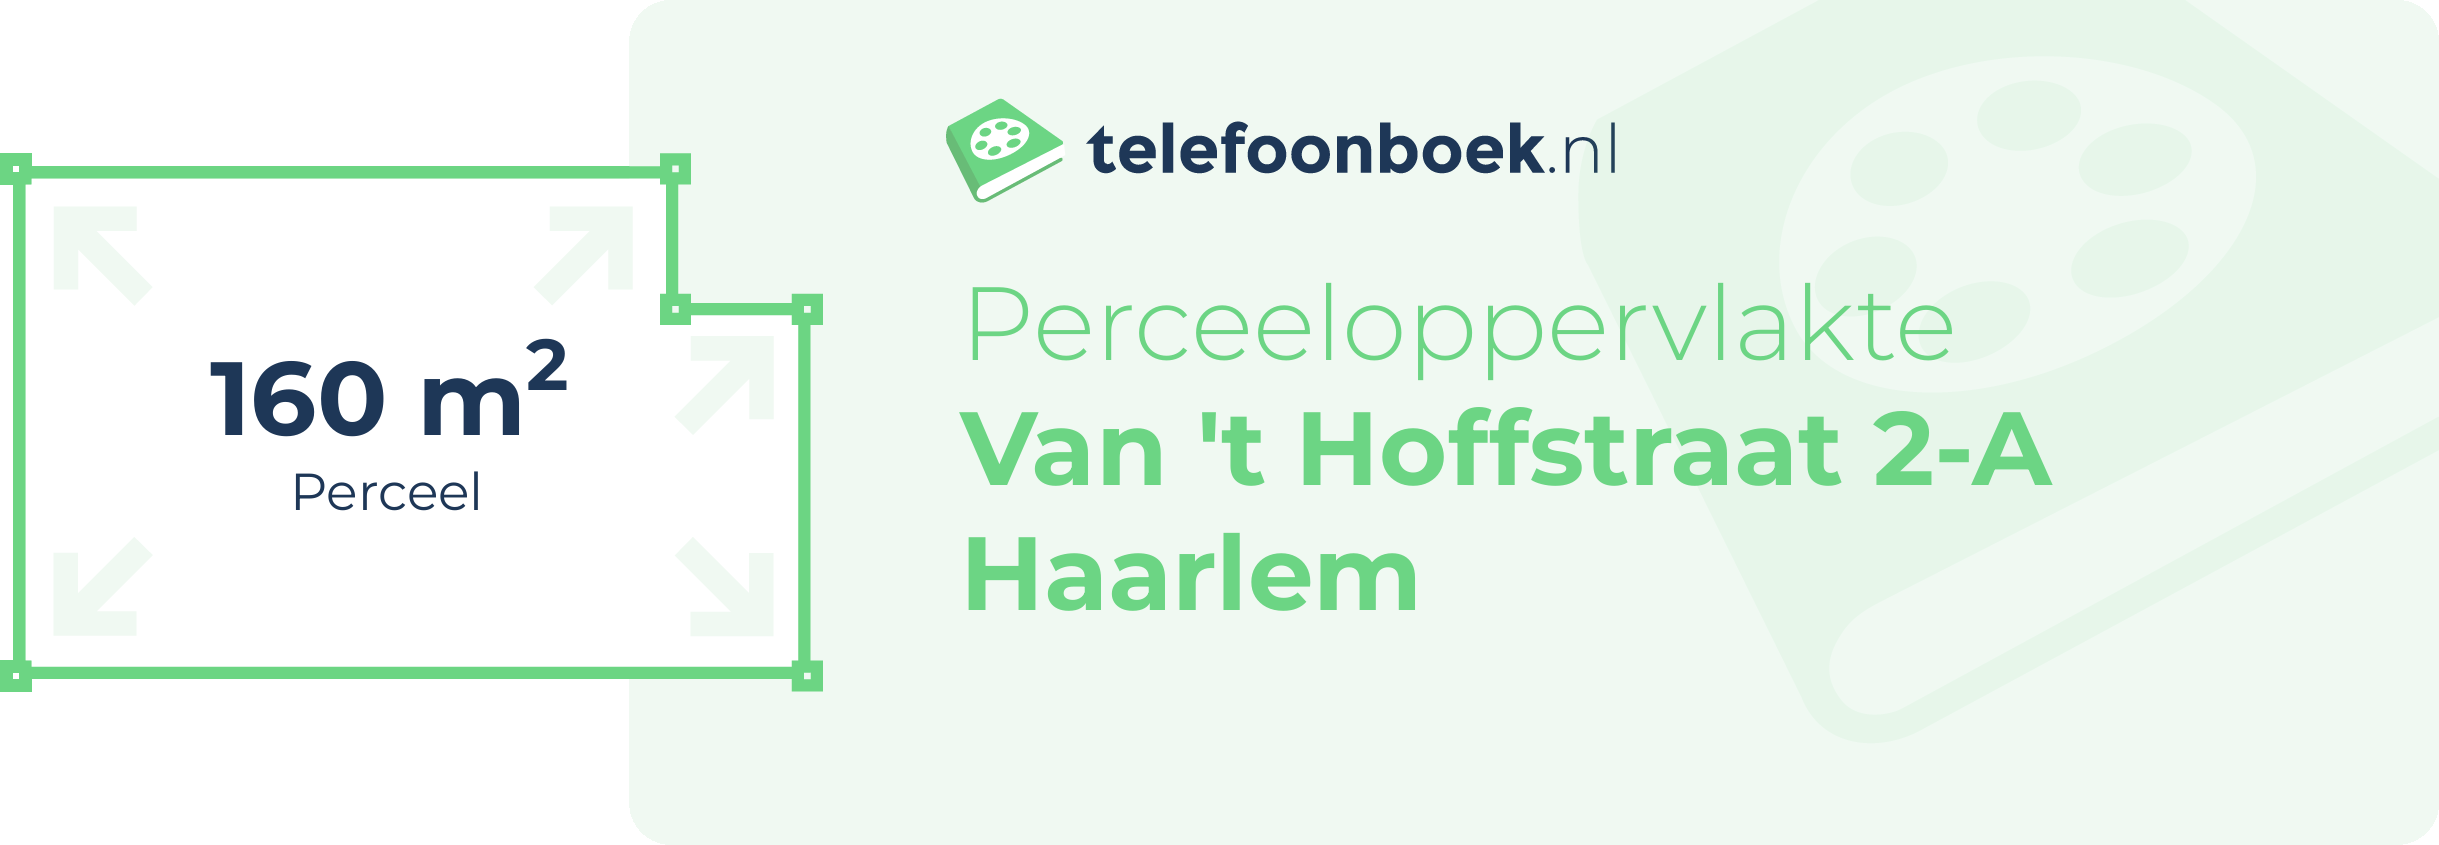 Perceeloppervlakte Van 't Hoffstraat 2-A Haarlem